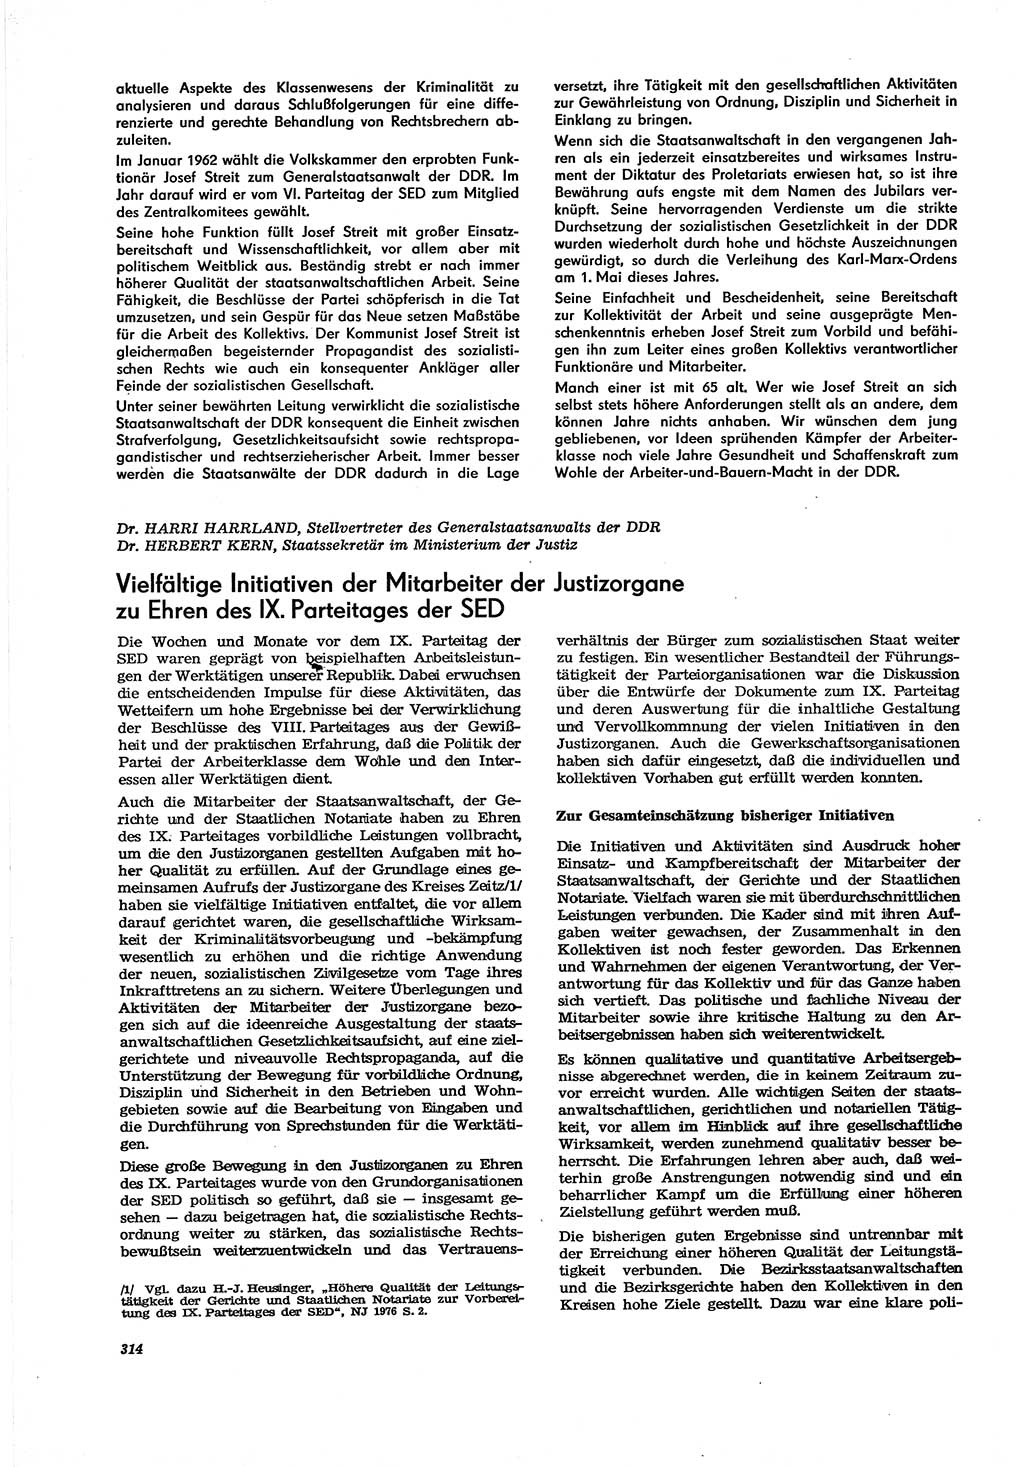 Neue Justiz (NJ), Zeitschrift für Recht und Rechtswissenschaft [Deutsche Demokratische Republik (DDR)], 30. Jahrgang 1976, Seite 314 (NJ DDR 1976, S. 314)